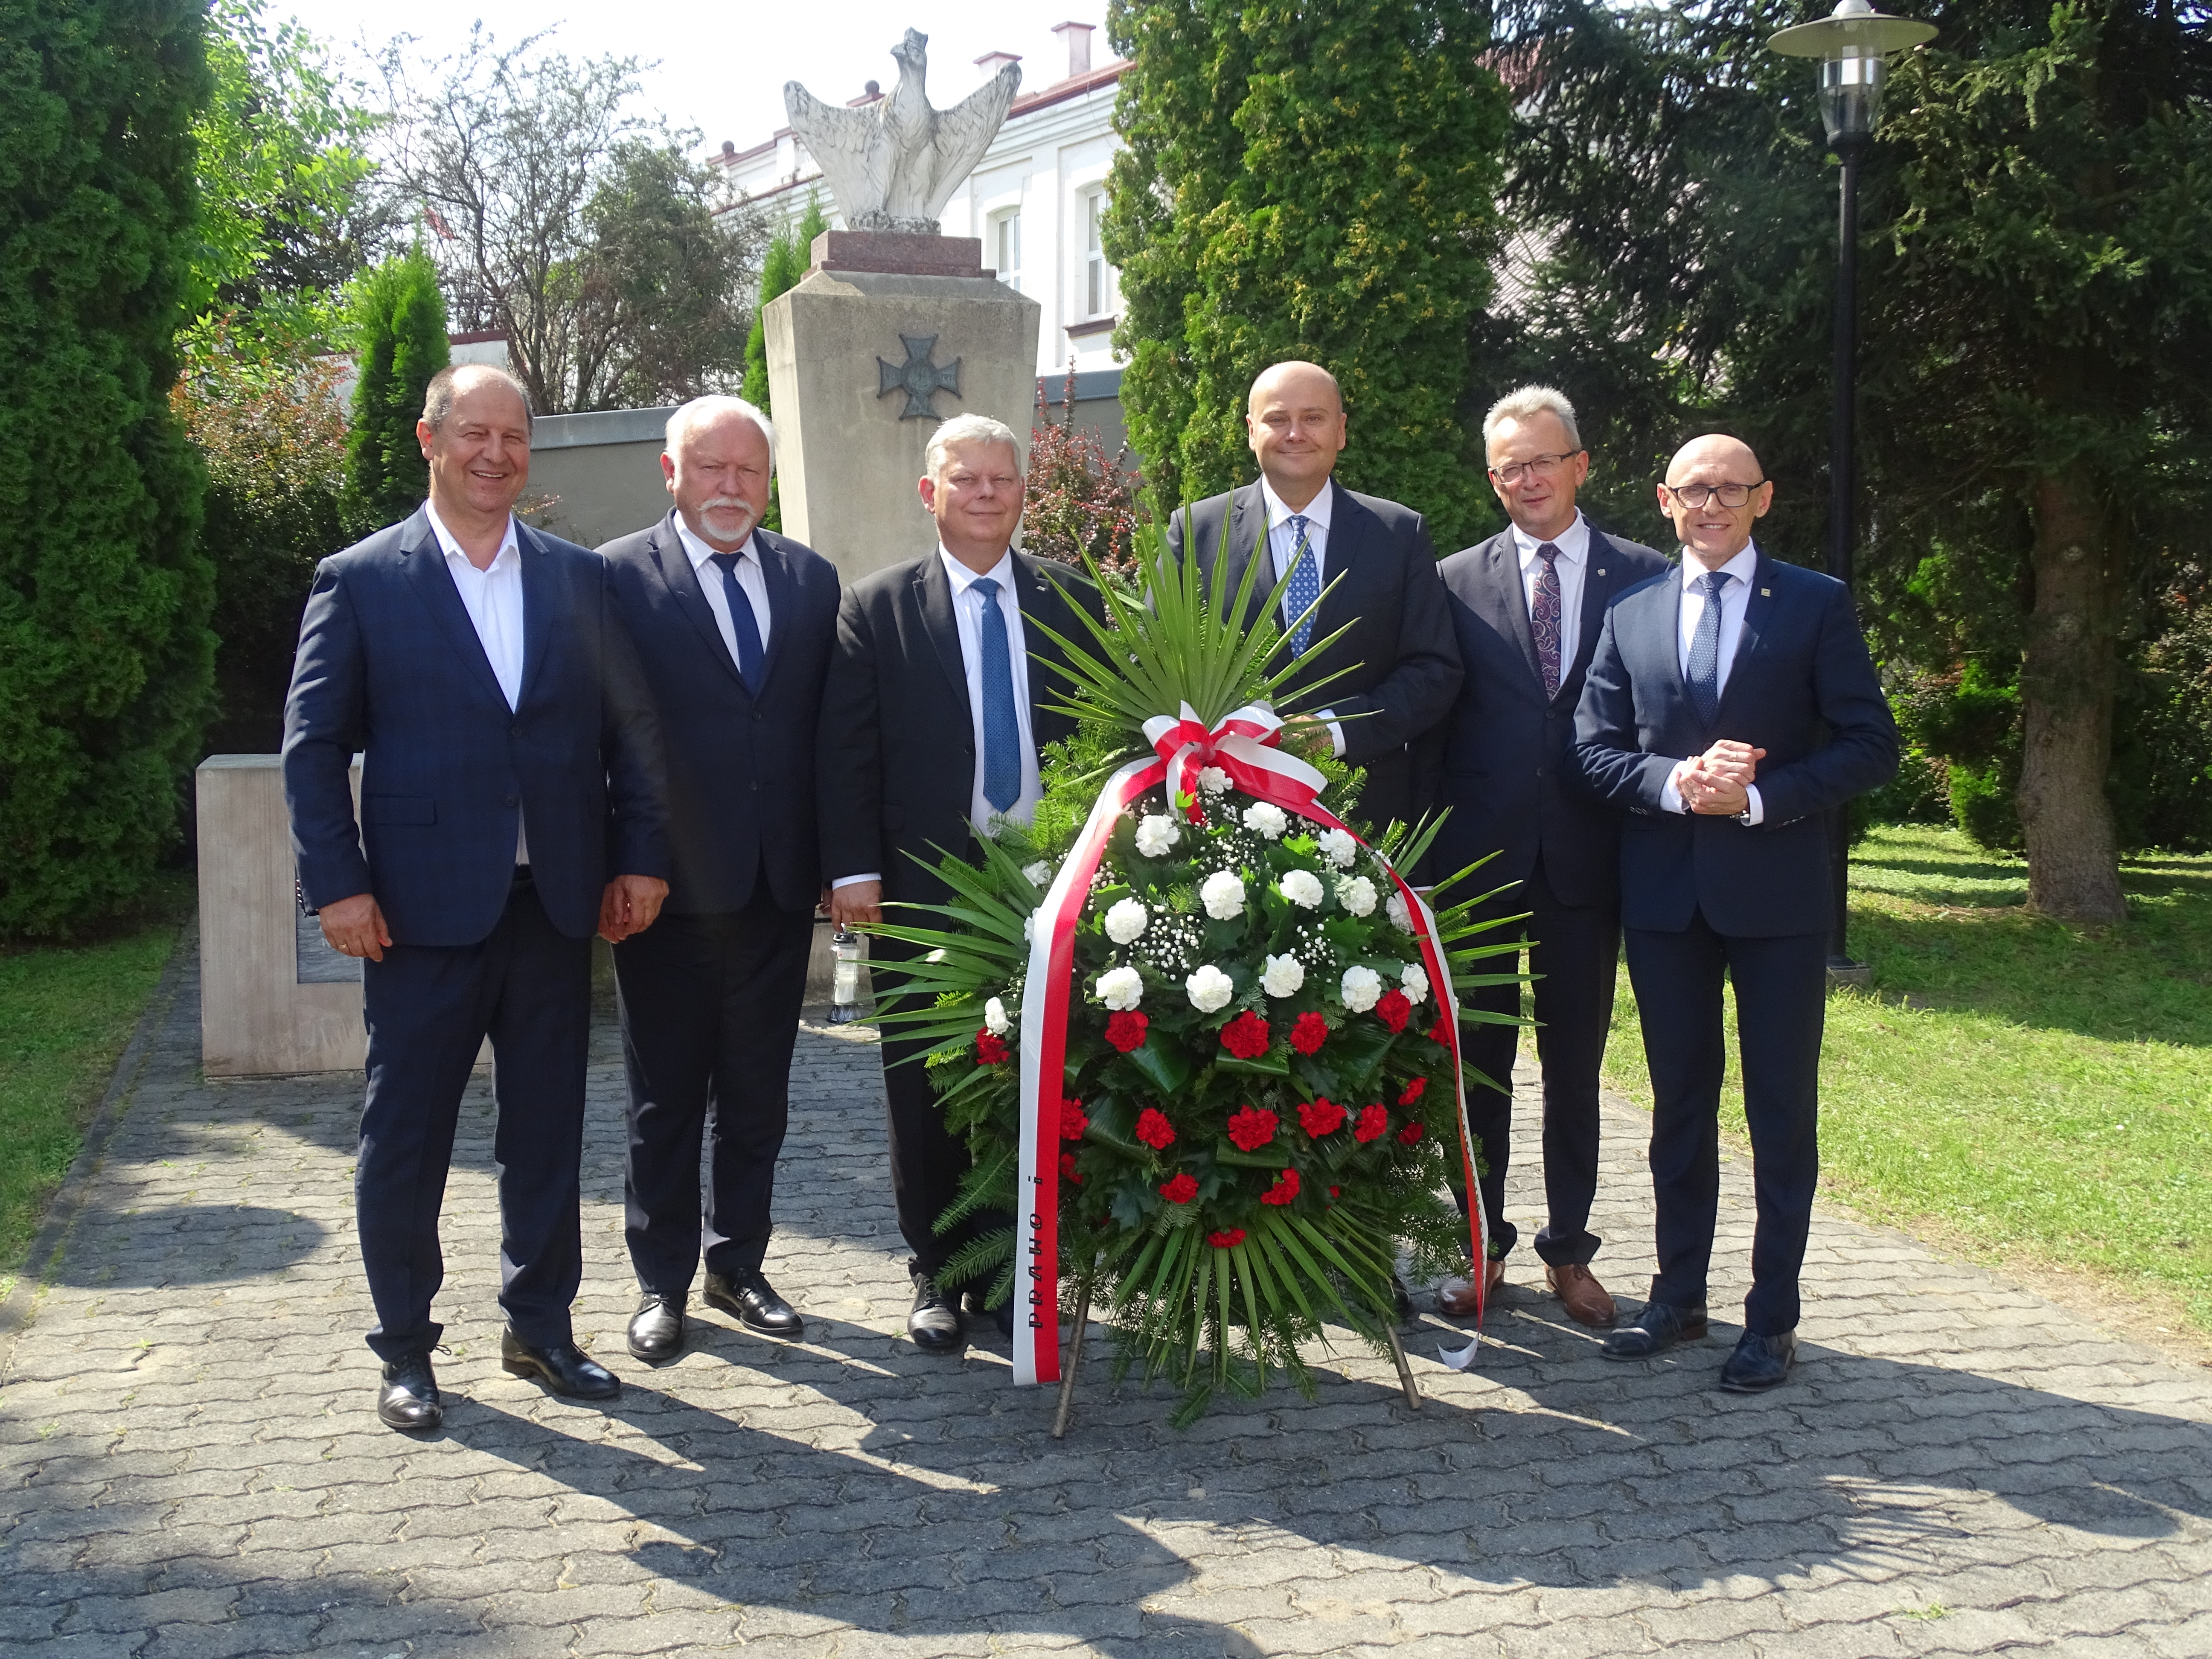 Hołd poległym w obronie Ojczyzny pod zwoleńskim pomnikiem oddali także posłowie na Sejm RP: Andrzej Kosztowniak, Marek Suski i Dariusz Bąk.